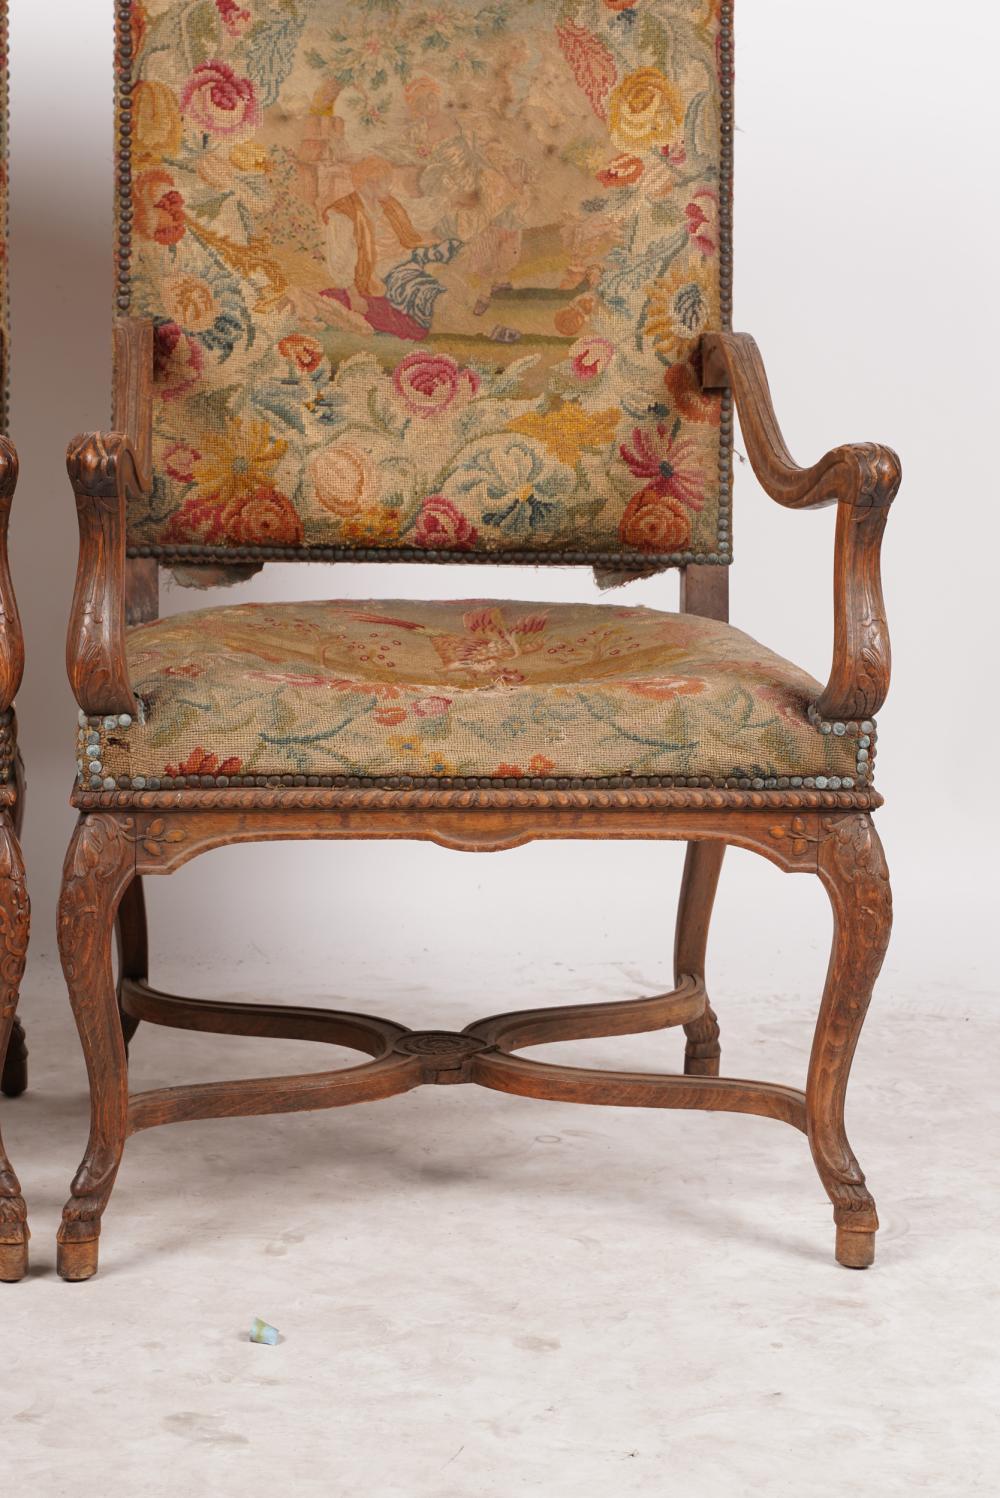 Paire de fauteuils Fauteuil en bois fruitier d'époque Directoire français vers 1800. Rembourrage en tissu strié bleu clair avec des brins blancs. Assise du siège à ressort hélicoïdal. Finition vieillie.